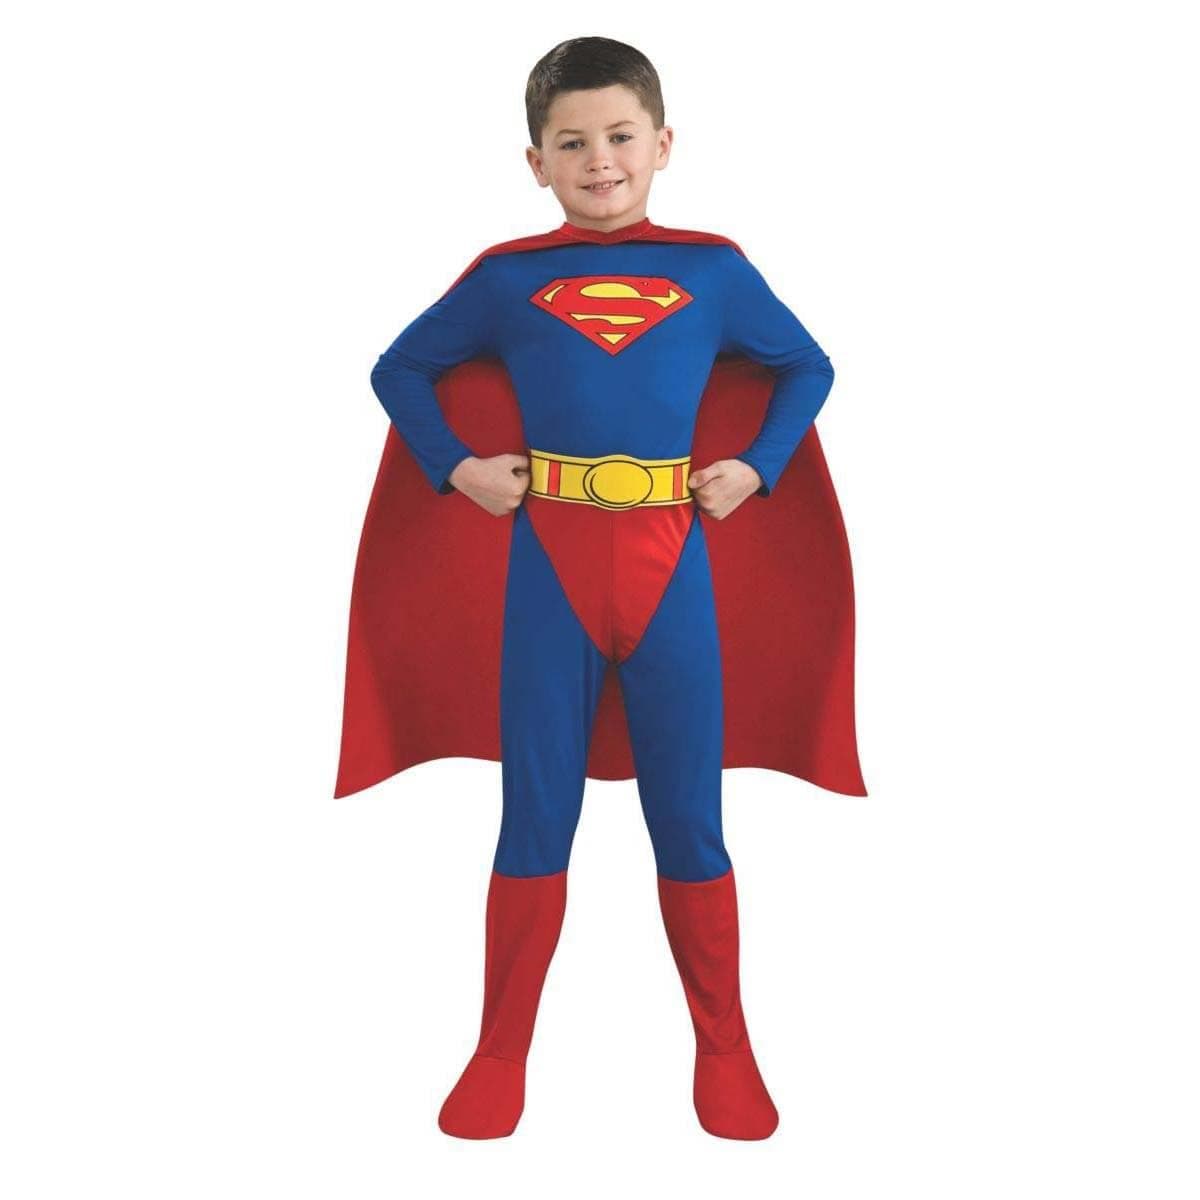 DÉGUISEMENT HÉROS SUPERMAN ENFANT - Votre magasin de costumes en ligne